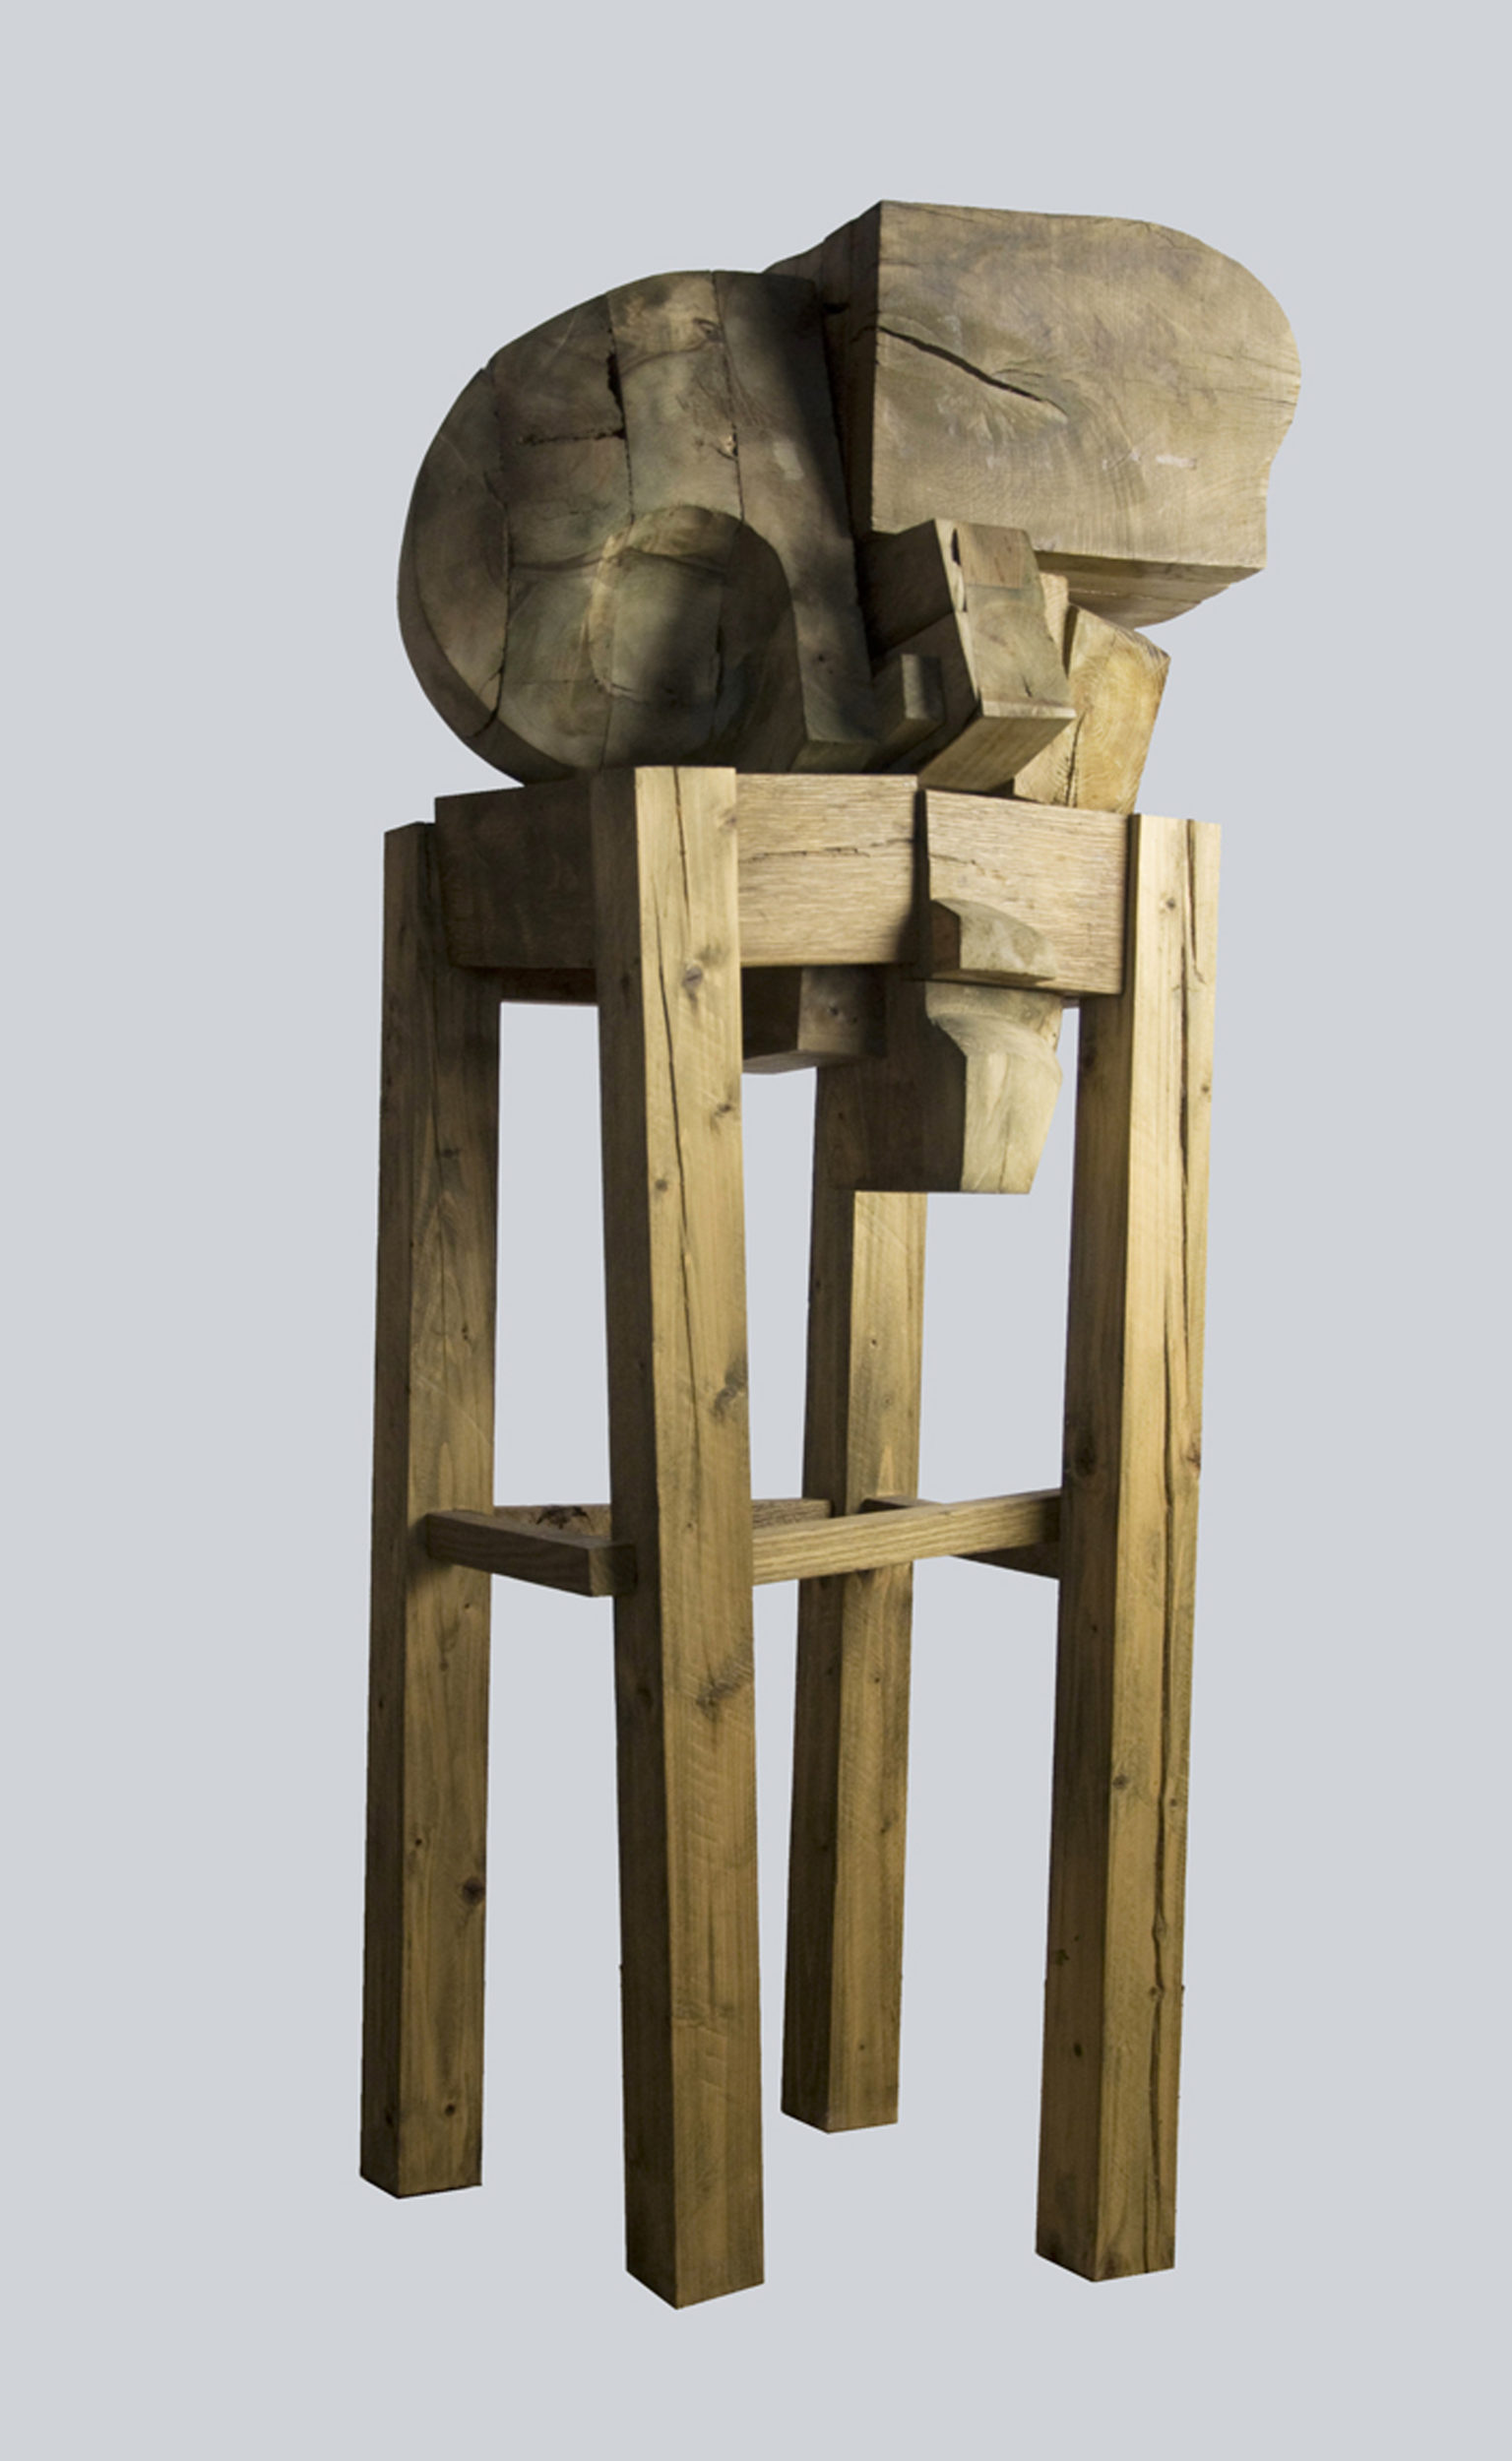 Studium głowy, drewno klejone, patynowane, 140 x 60 x 60 cm